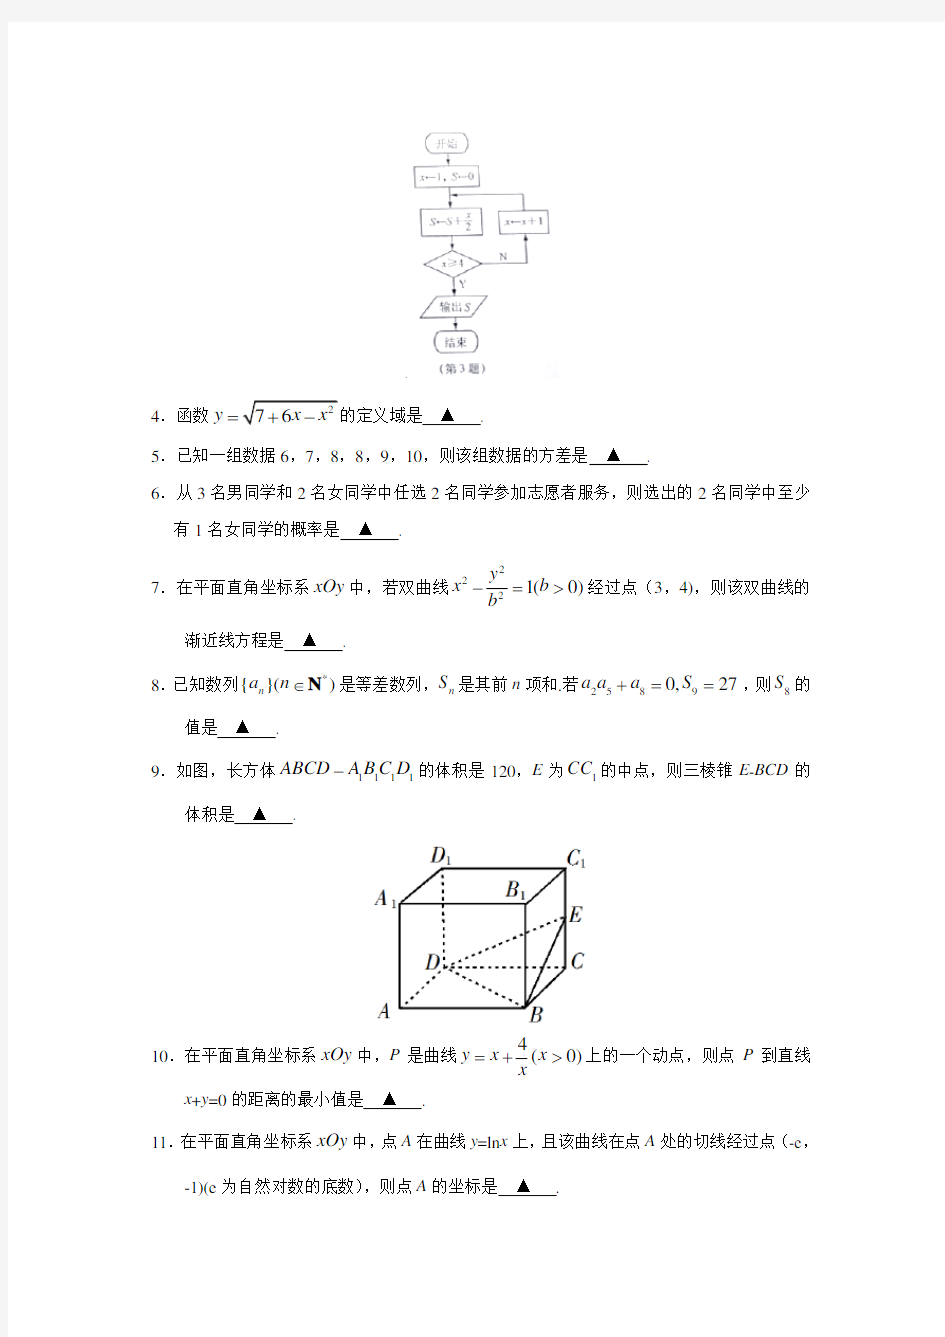 2019年高考真题数学(江苏卷含答案)